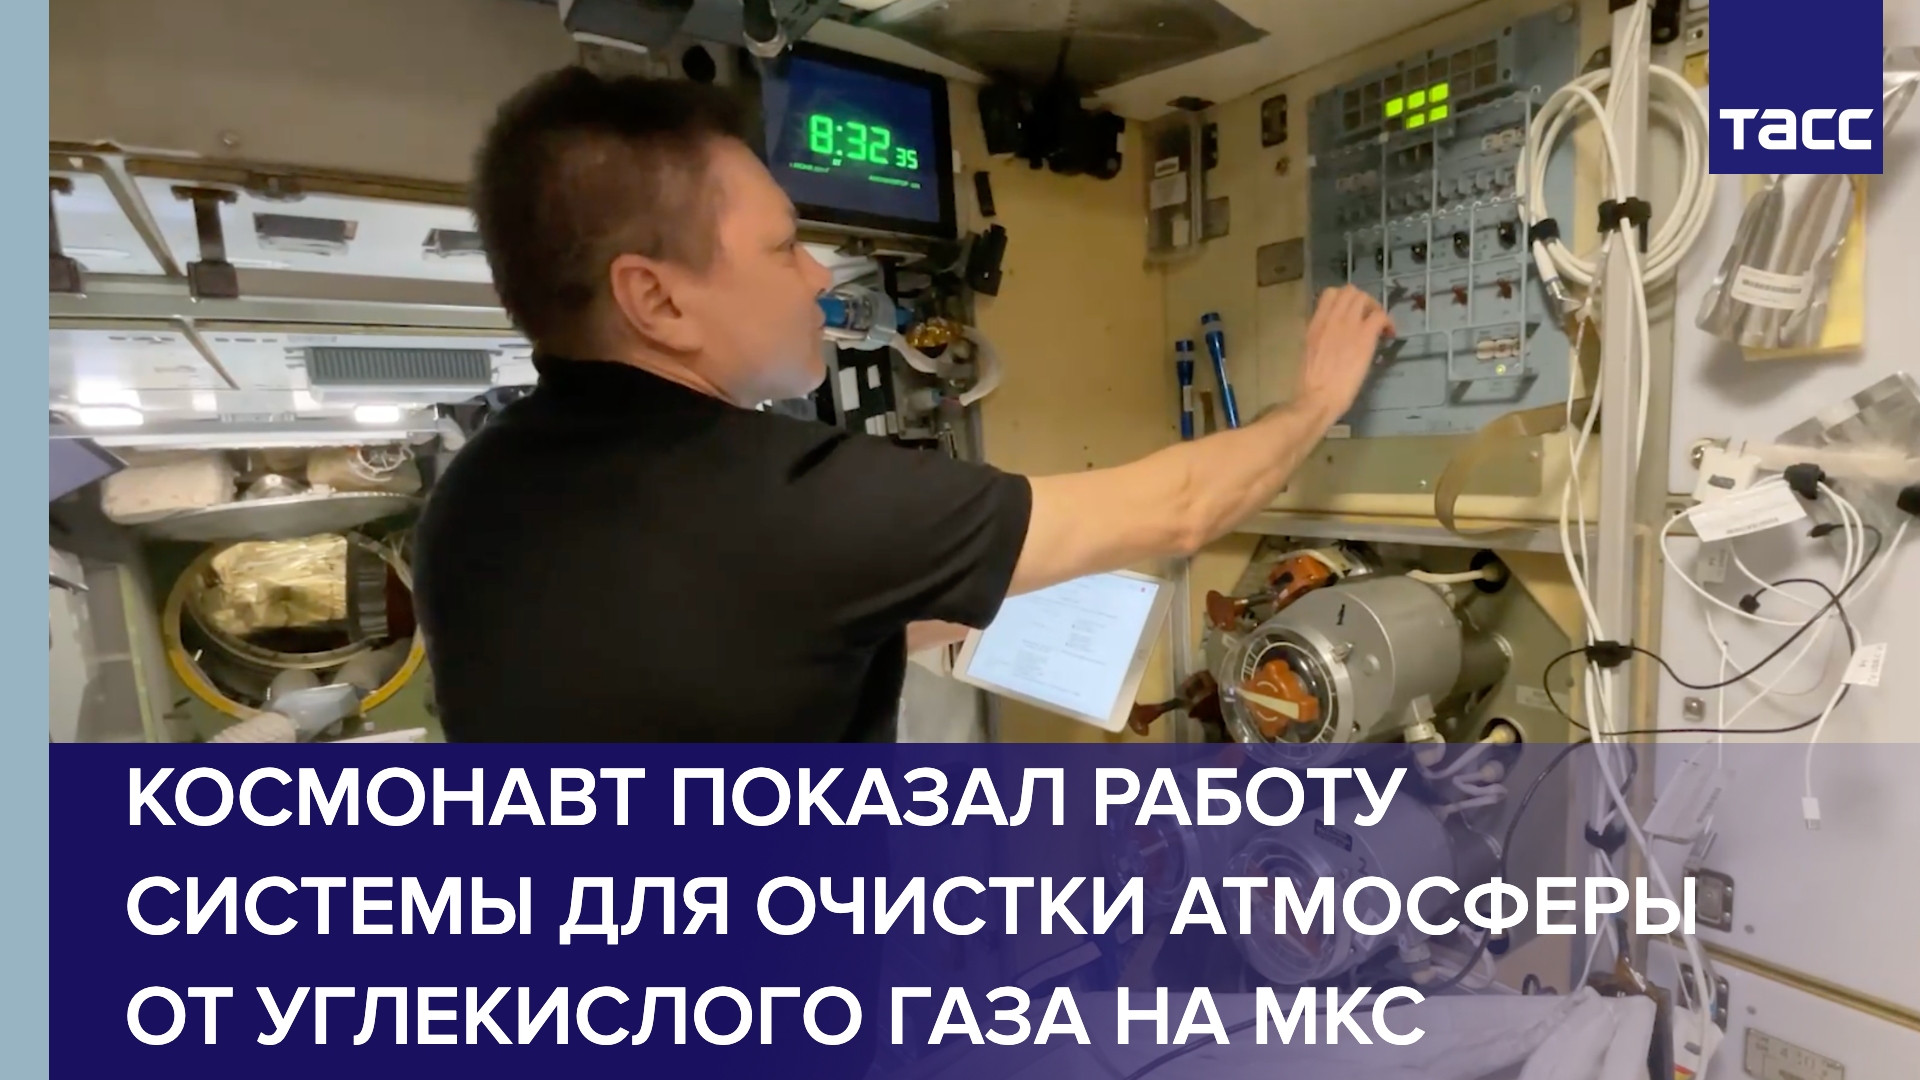 Космонавт показал работу системы для очистки атмосферы от углекислого газа на МКС